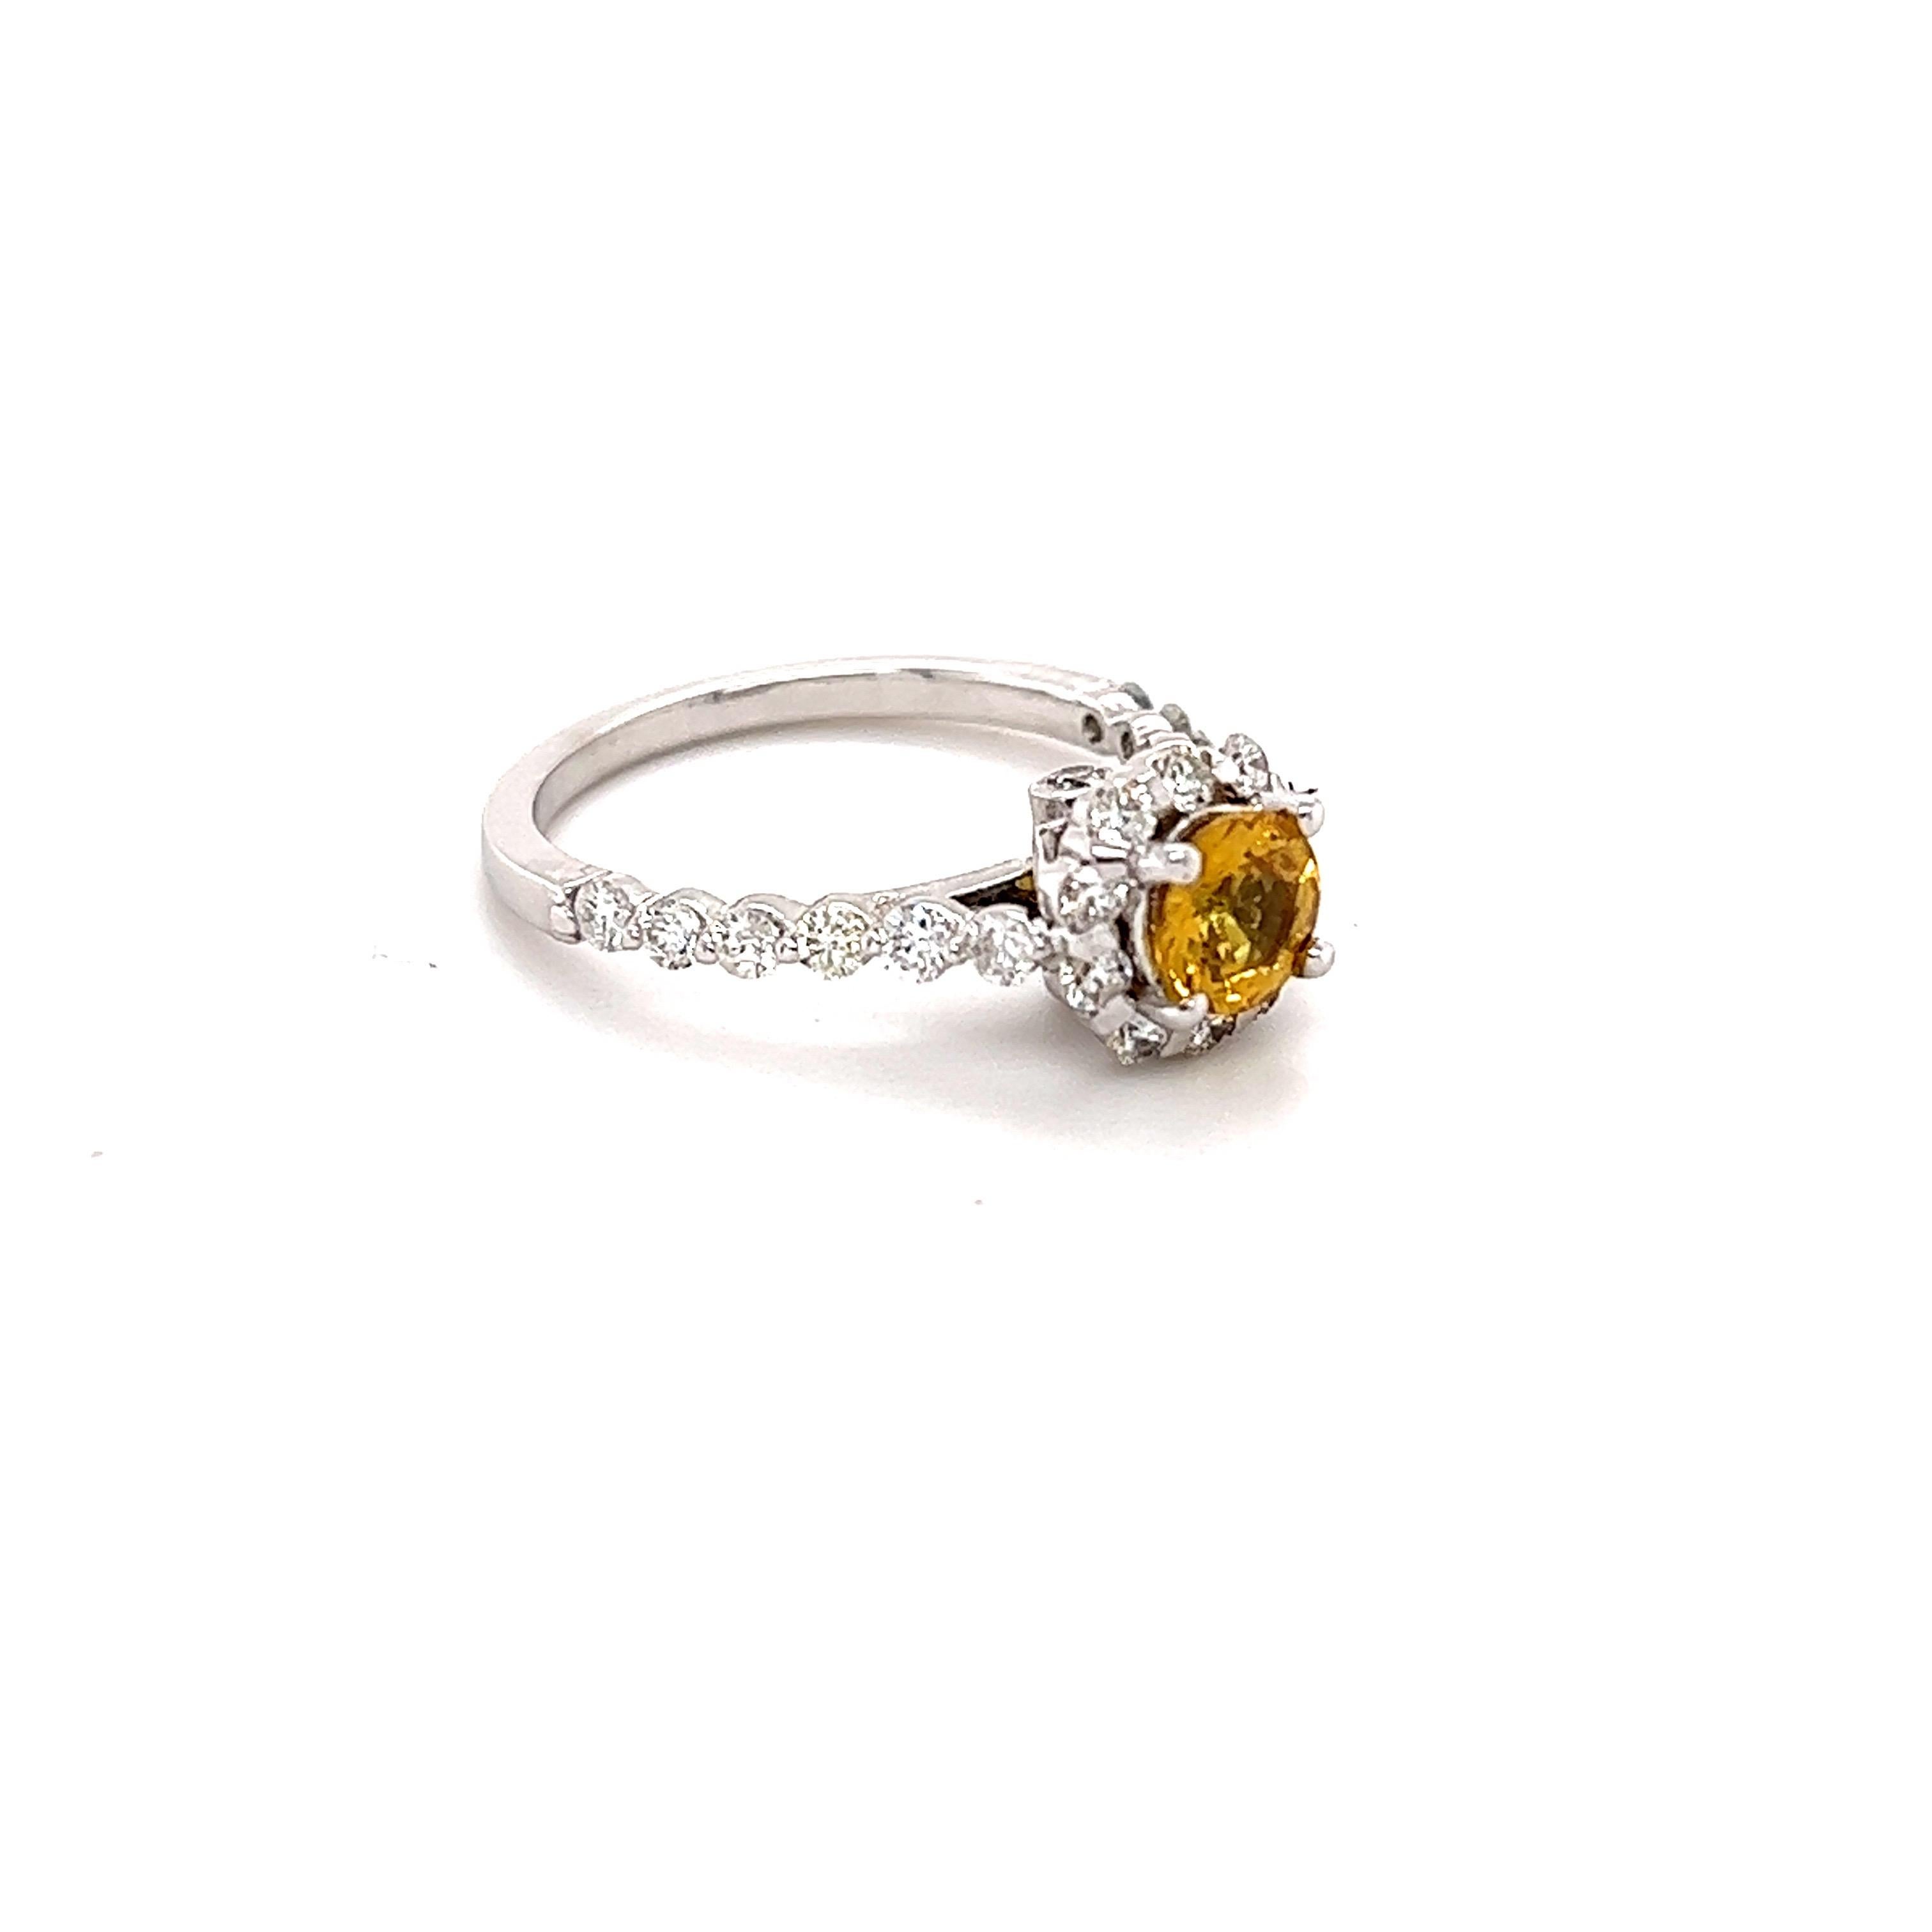 Dieser schöne Ring hat einen natürlichen Rundschliff gelben Saphir mit Hitze, die 0,72 Karat wiegt. Die Maße des Gelben Saphirs liegen bei etwa 5 mm. 

Der Ring ist mit 18 Diamanten im Rundschliff mit einem Gewicht von 0,65 Karat und einer Reinheit